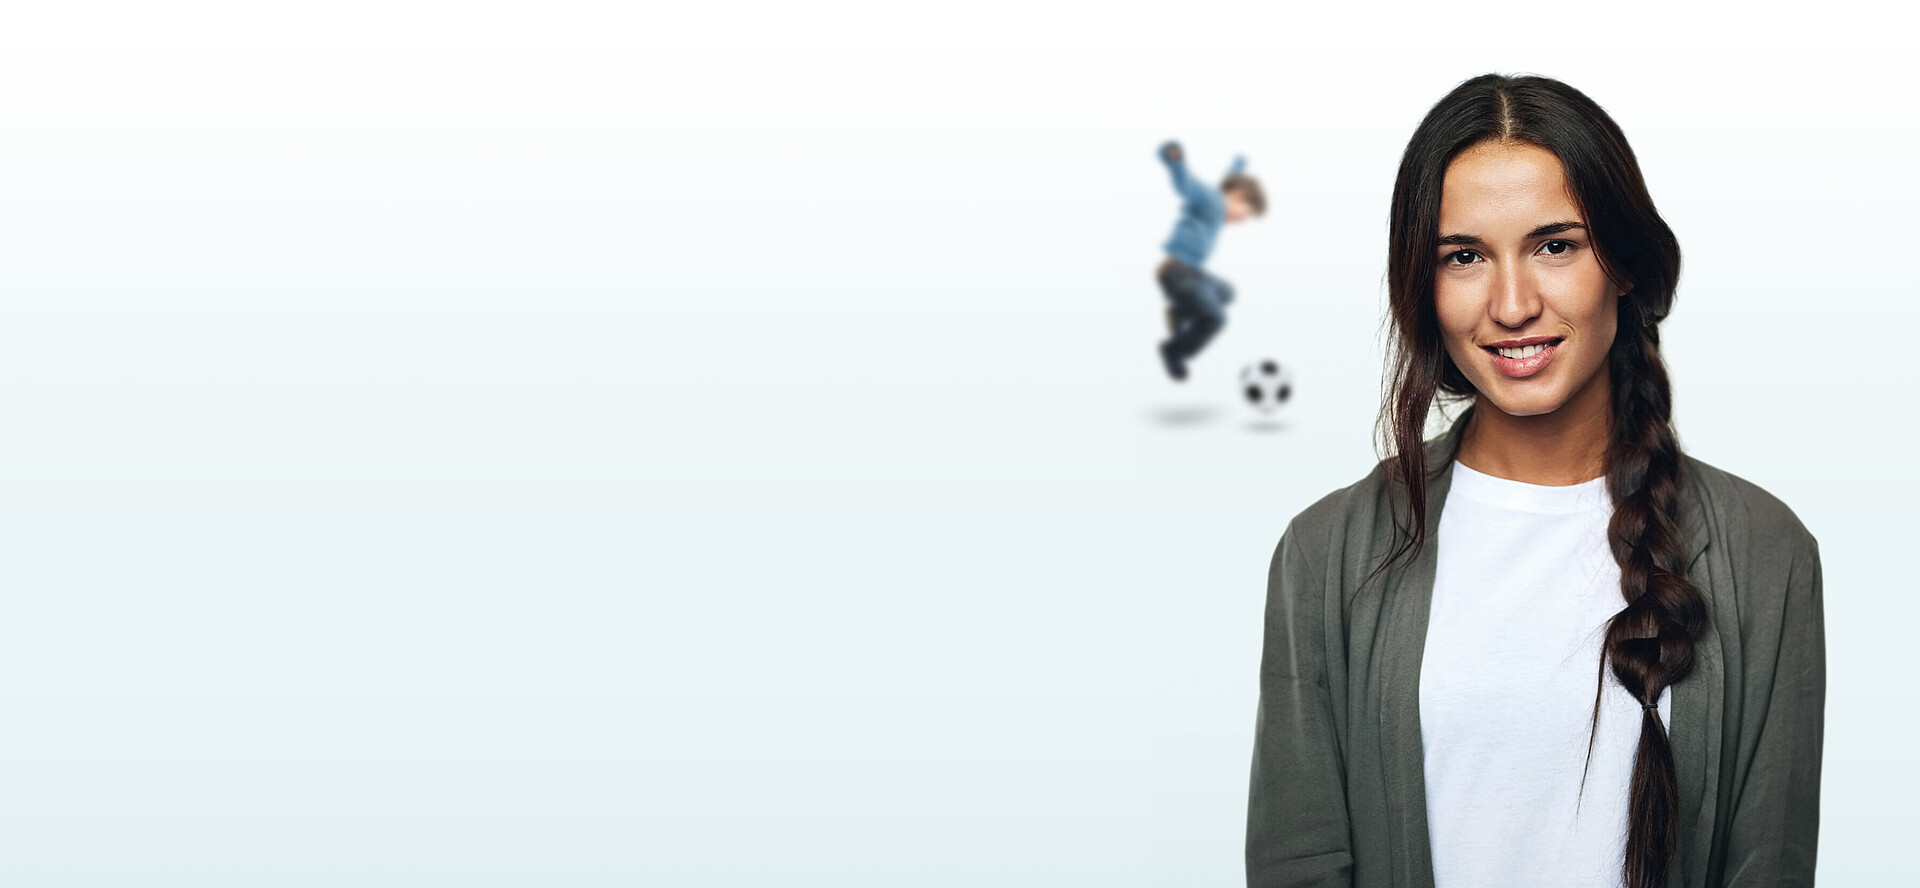 Geschäftsfrau mit geflochtenen Haaren mit einem Fußball spielendem Kind im Hintergrund